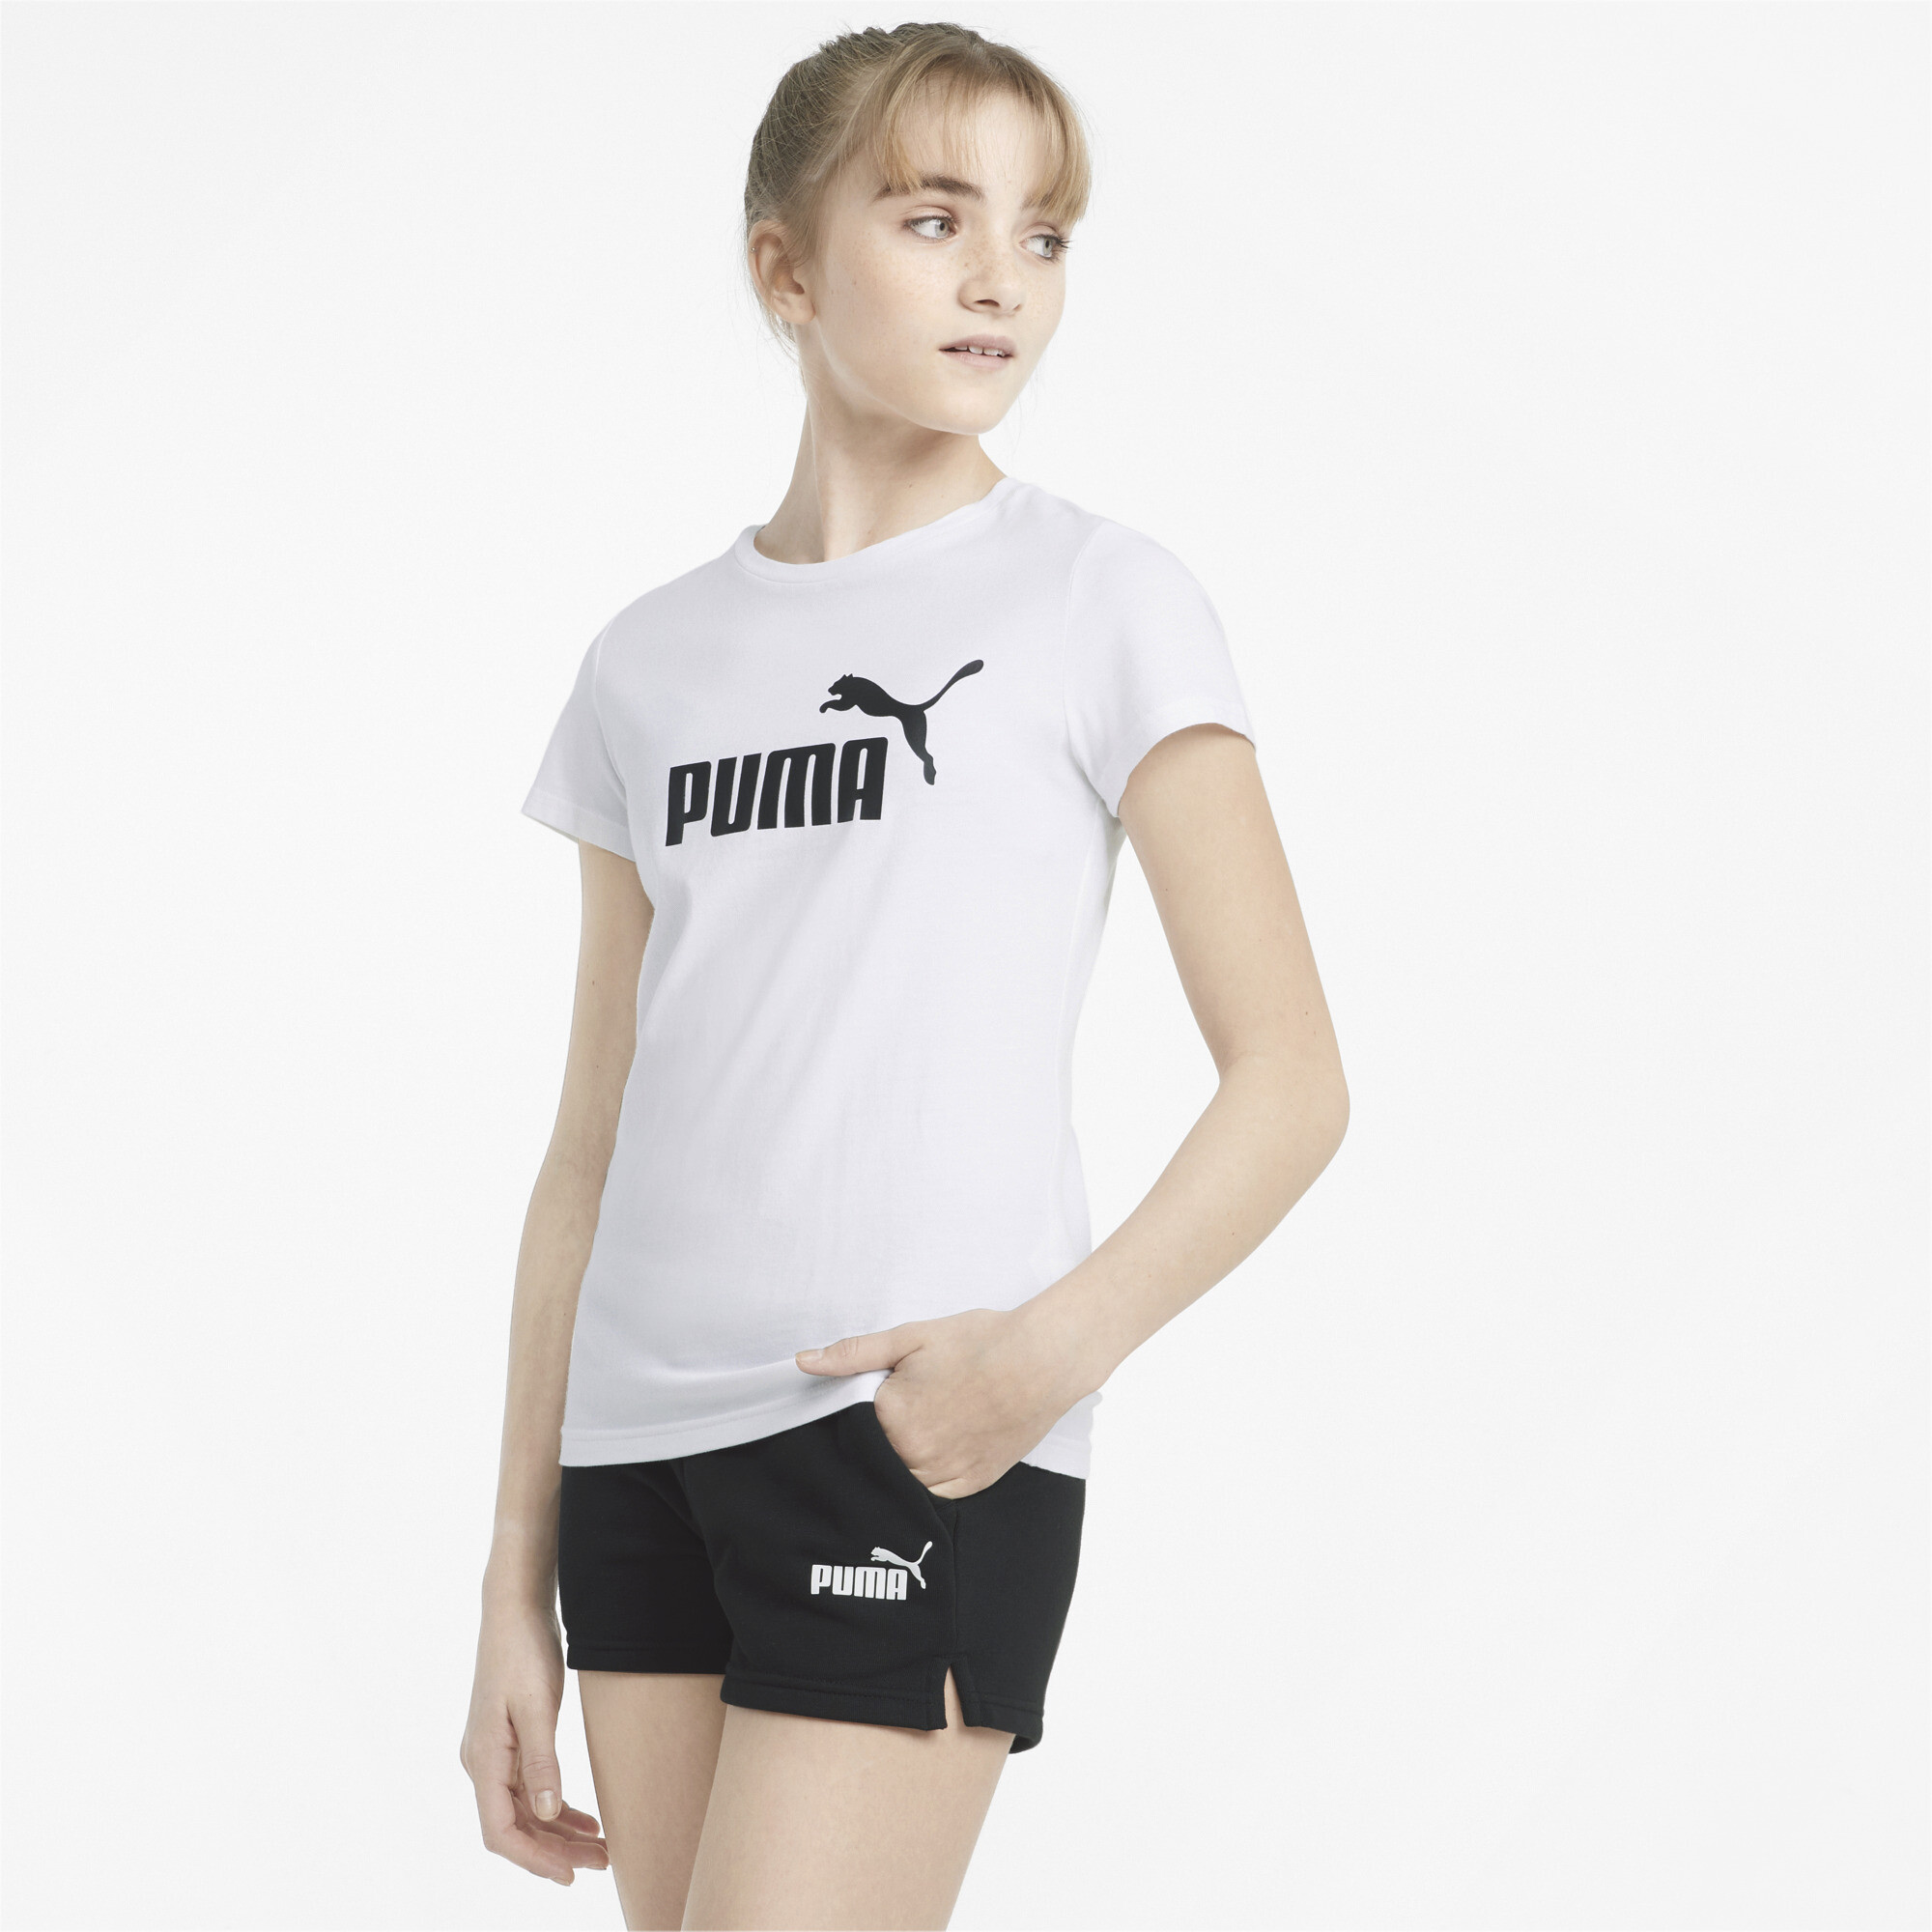 Women's Puma Logo Tee And Shorts Youth Set, White, Size 13-14Y, Clothing